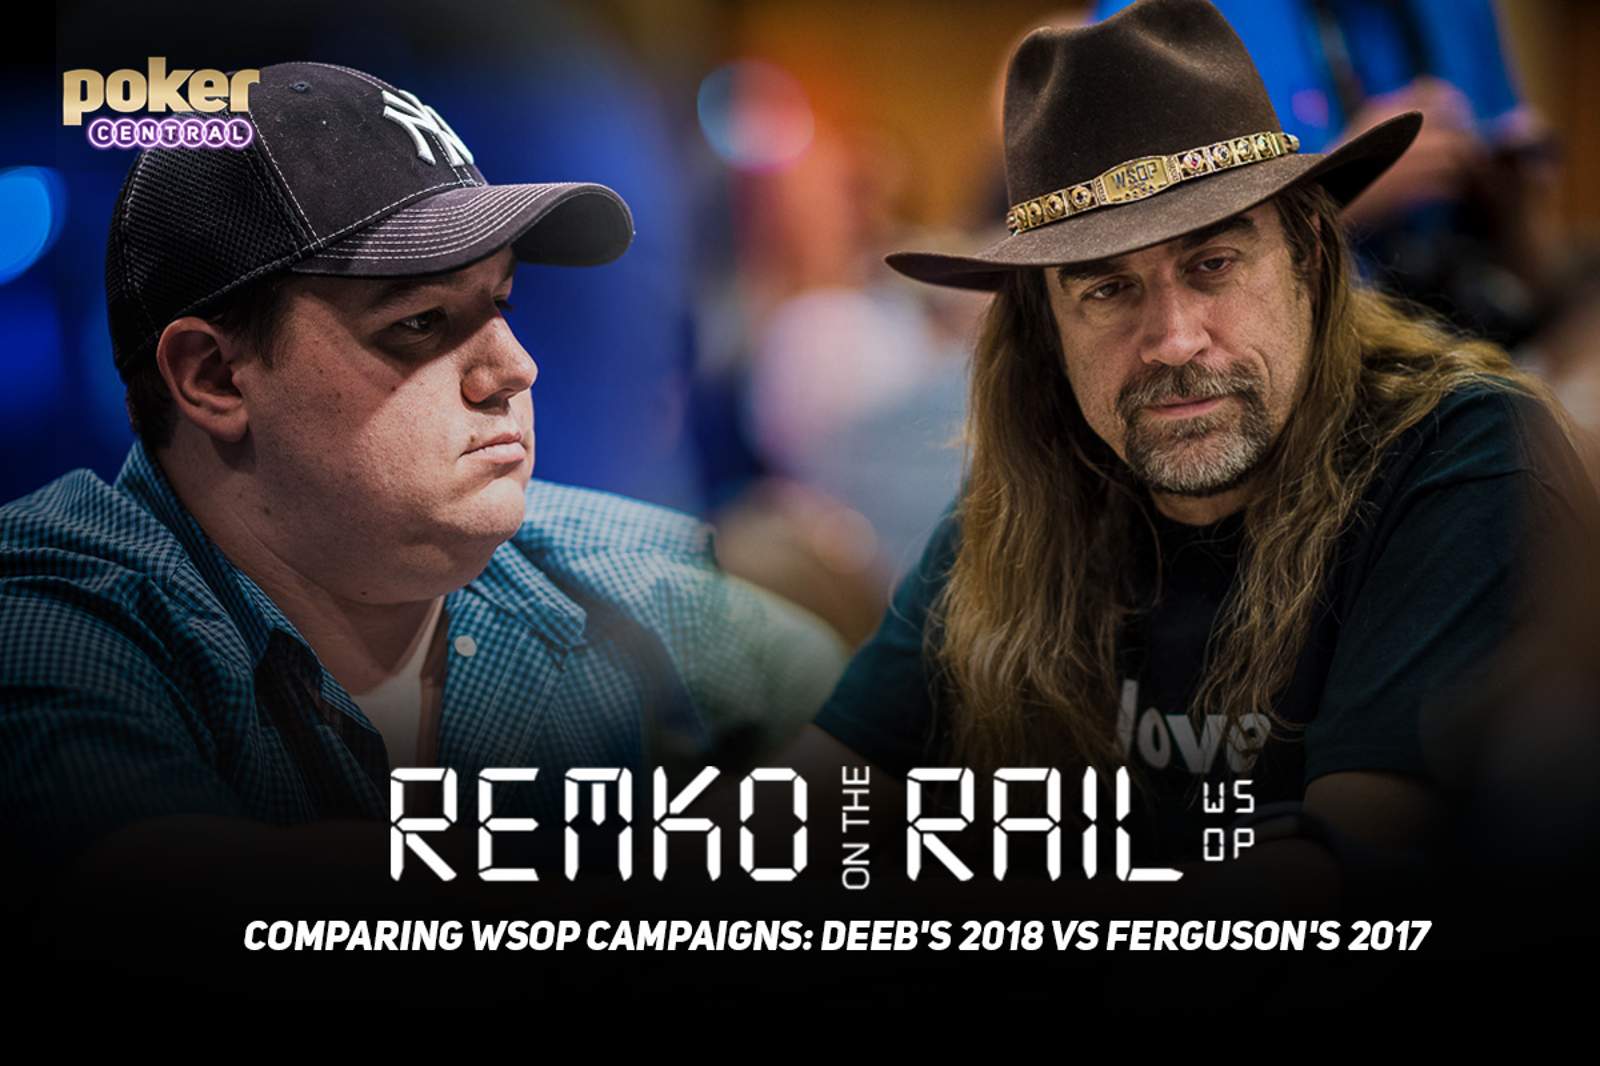 Remko on the Rail - Comparing WSOP Campaigns: Deeb's 2018 vs Ferguson's 2017